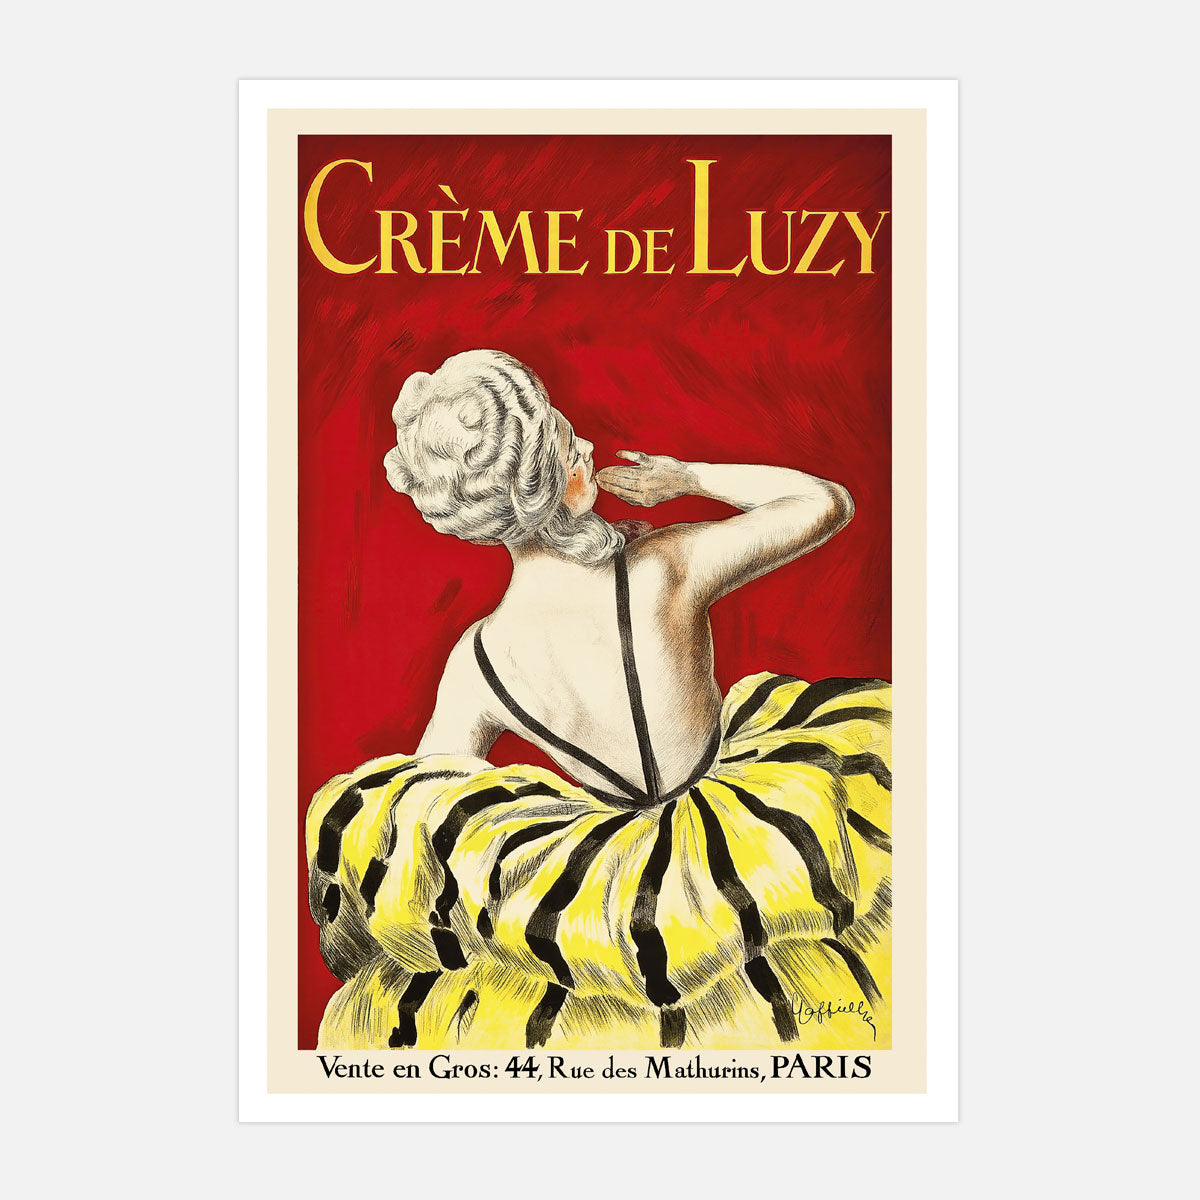 Creme de Luzy Paris vintage retro print from Places We Luv